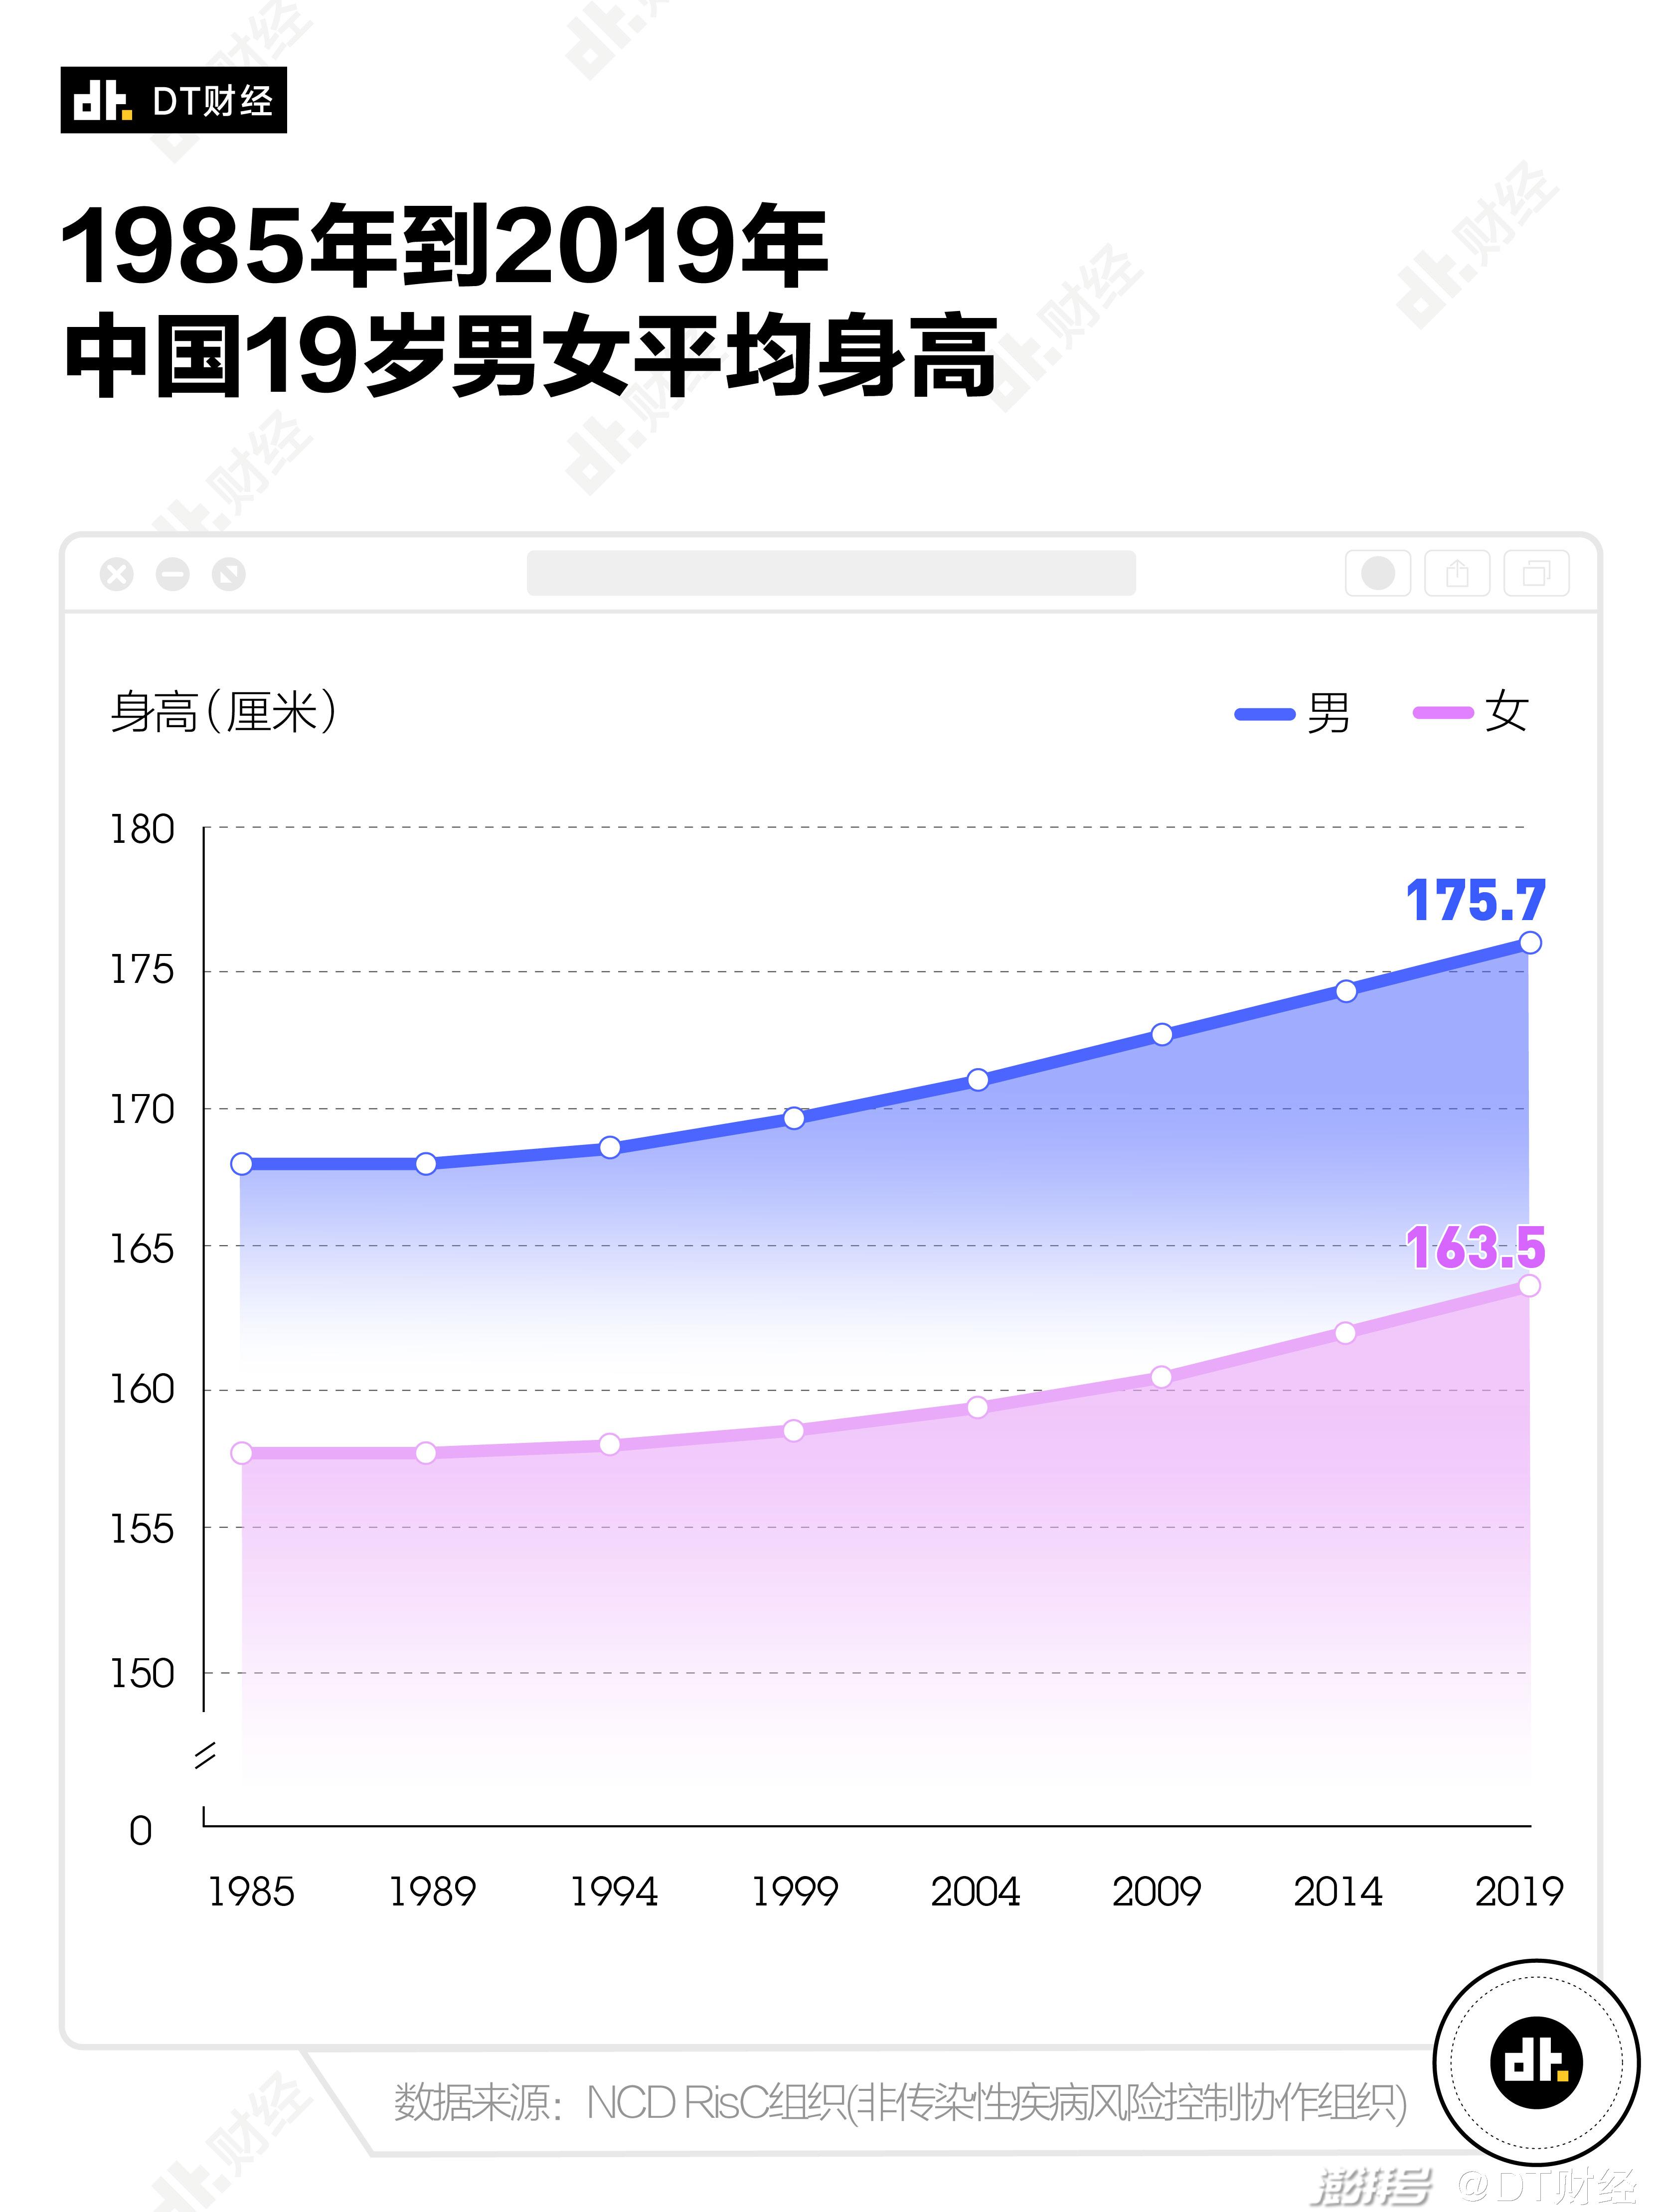 中国男女平均身高图片